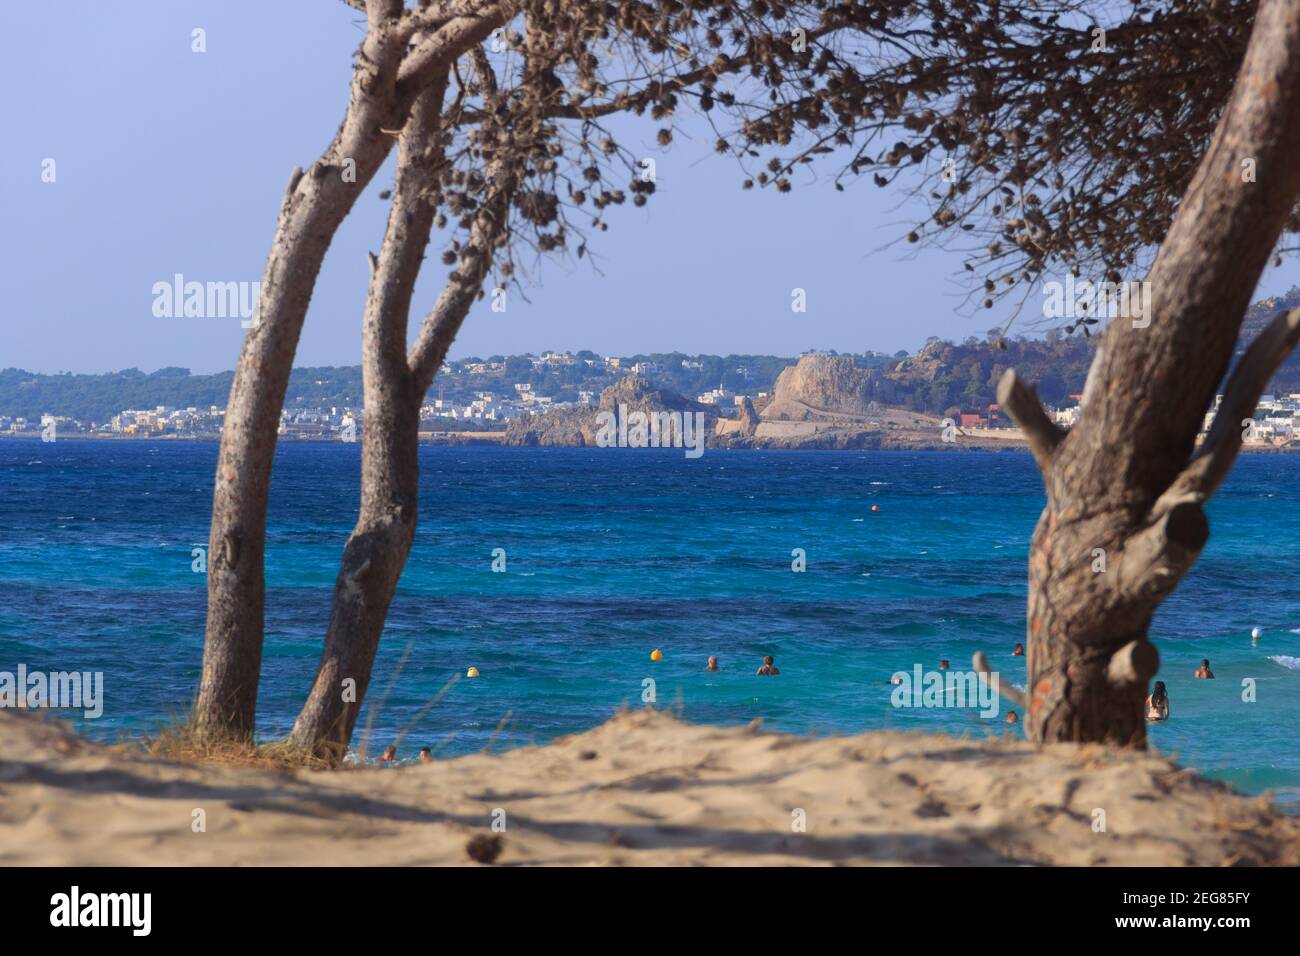 Lido Conchiglie Beach in Salento, Apulia (Italy). In the background Montagna Spaccata. Stock Photo